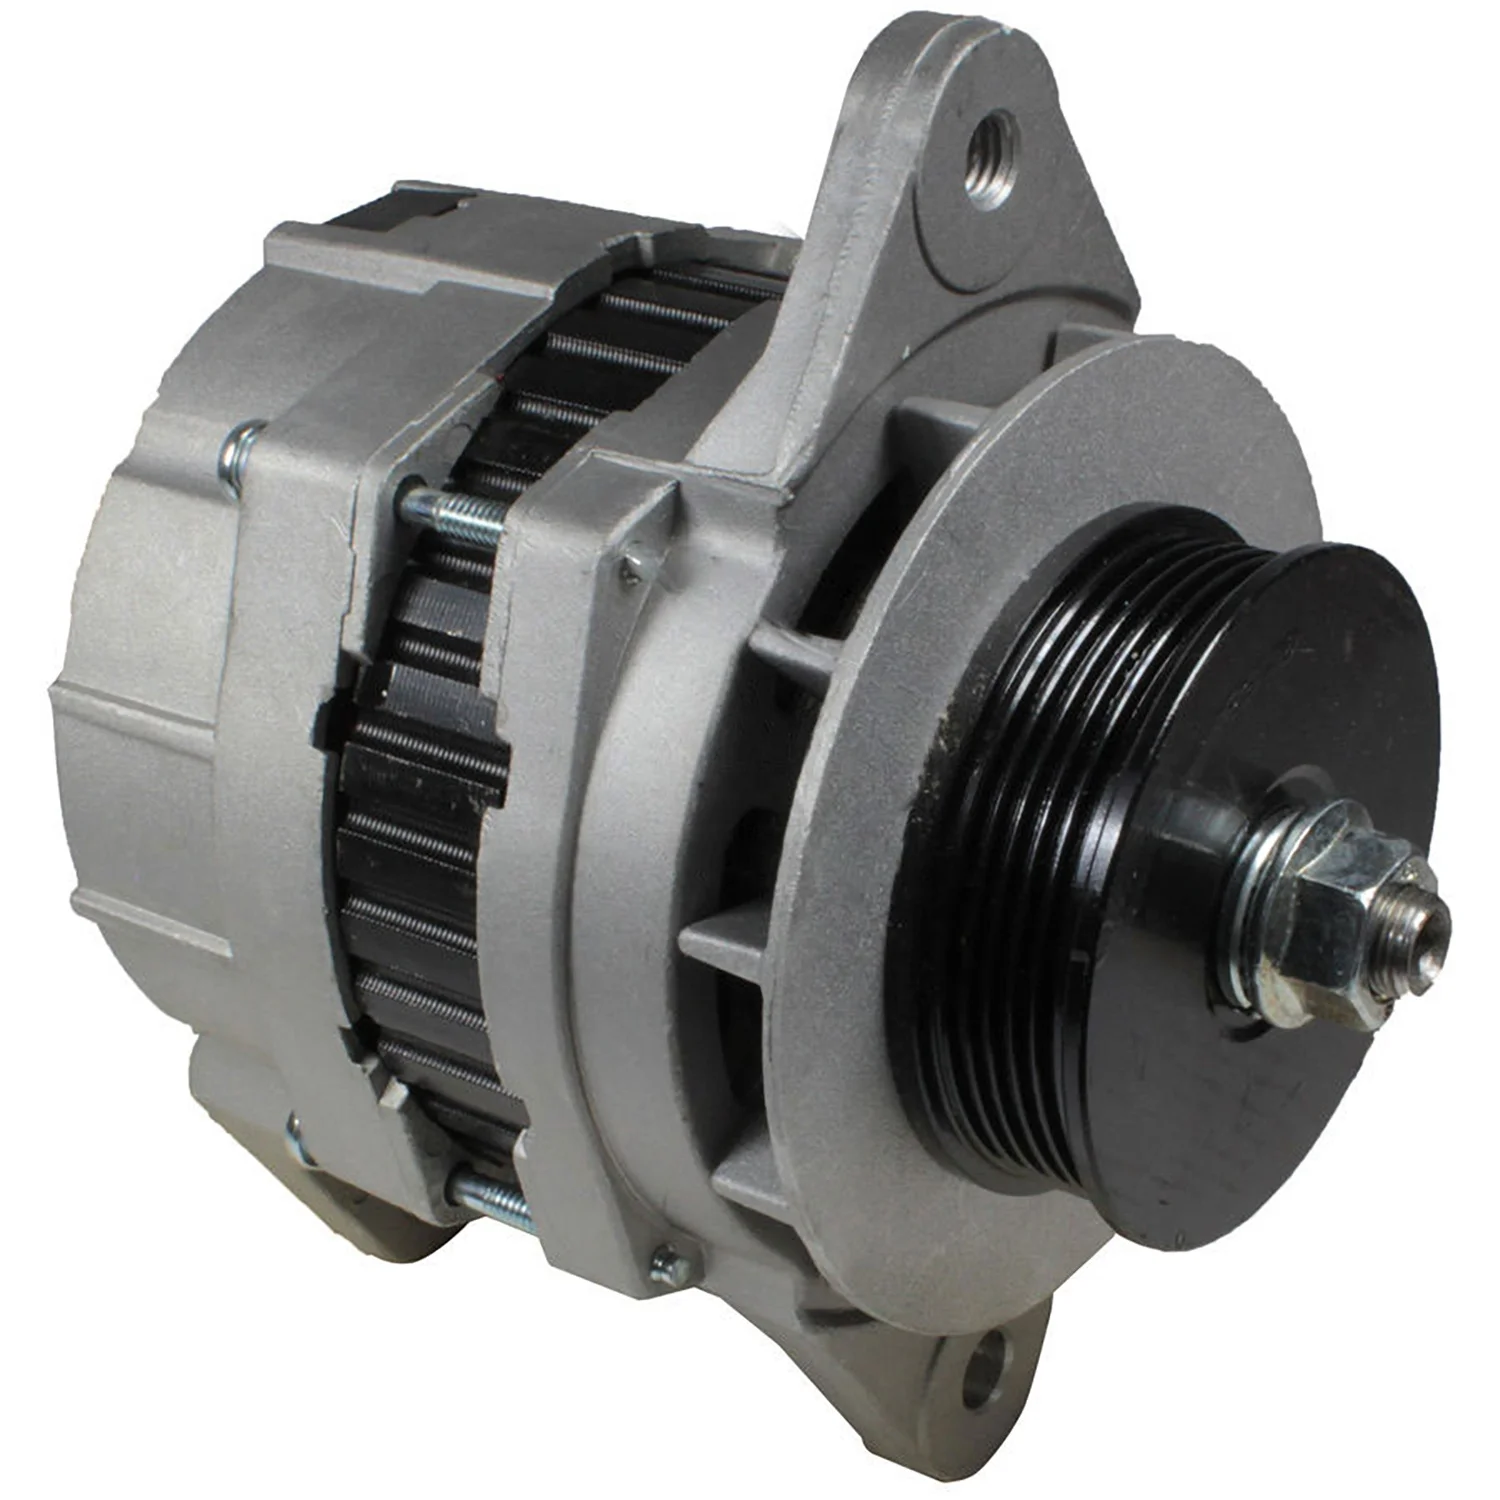 

Auto Dynamo Alternator Generator For Cumin Delco HD 111647 4000590 OR8279 2191166 390087 DRA0447 21EA00050